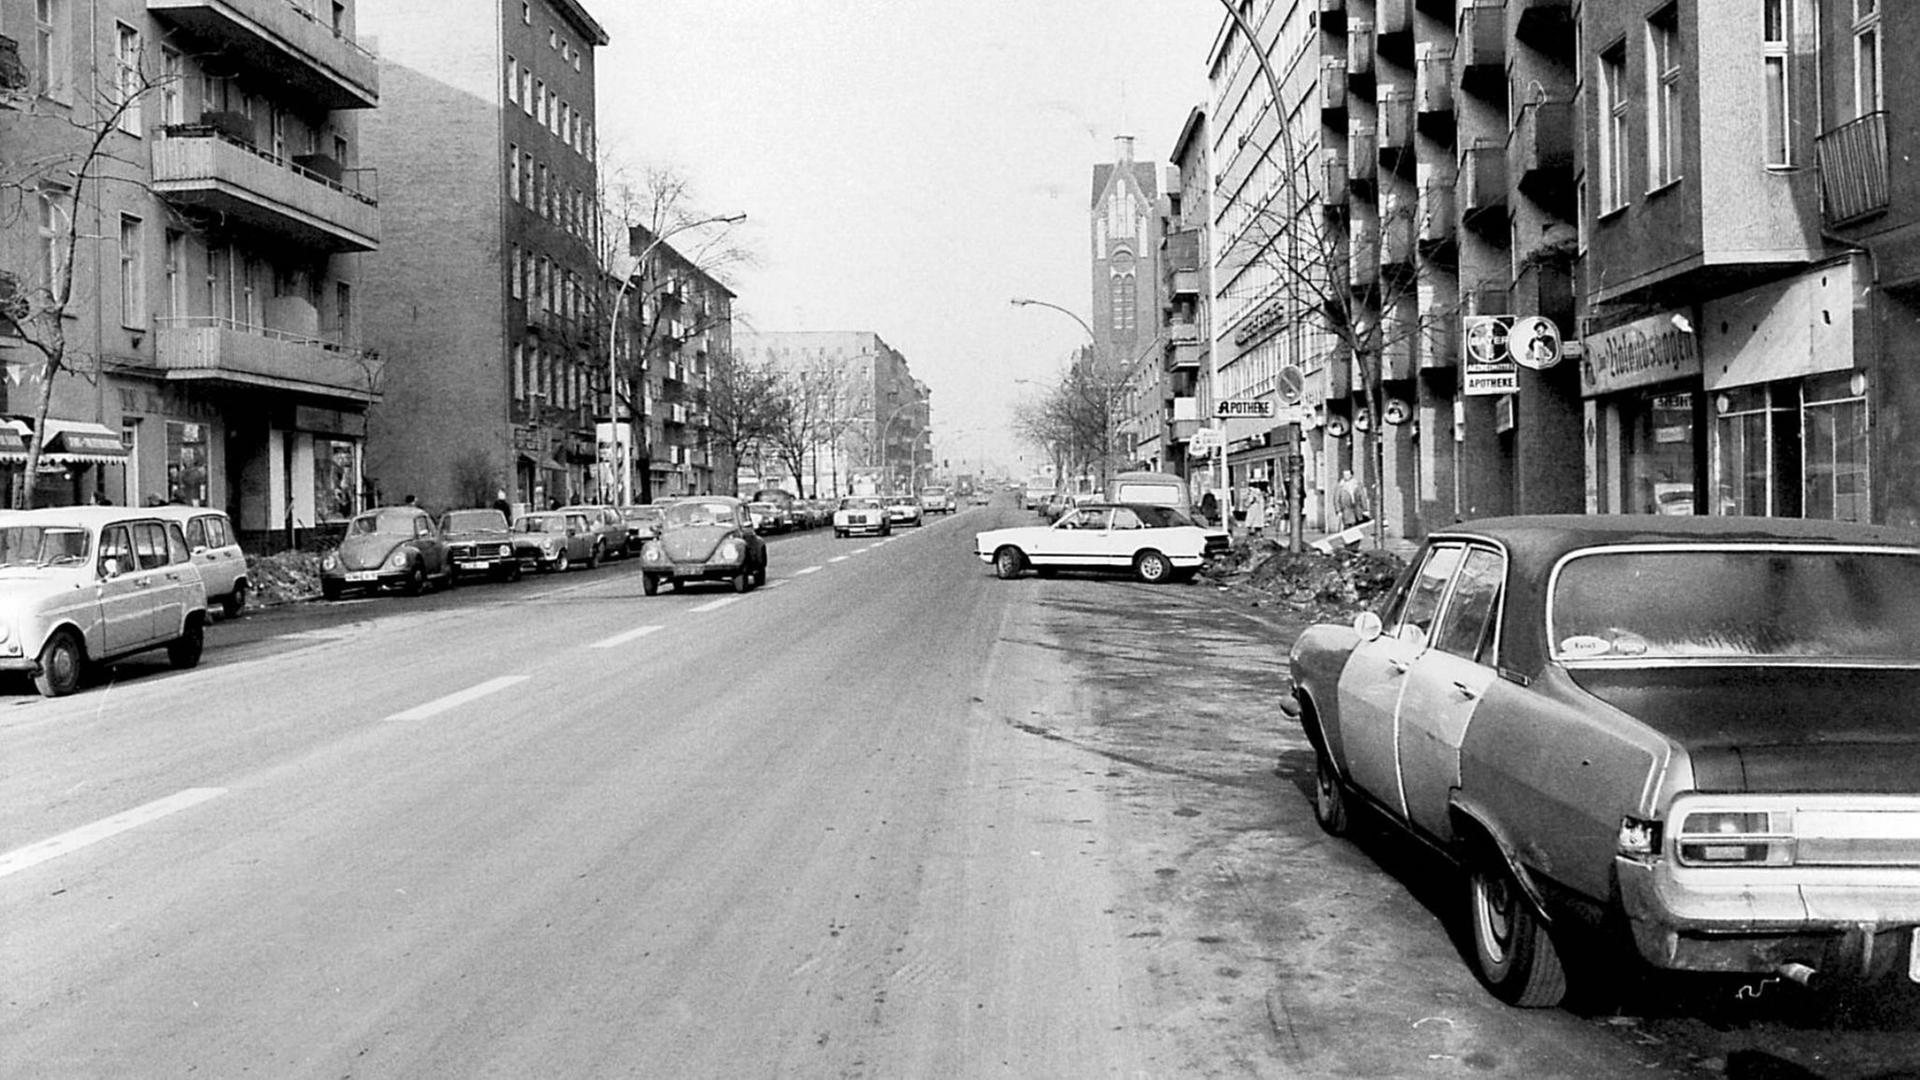 Schwarzweißaufnahme einer menschenleeren Berliner Straße mit parkenden Autos. Die Straße führt zum Fluchtpunkt des Bildes.